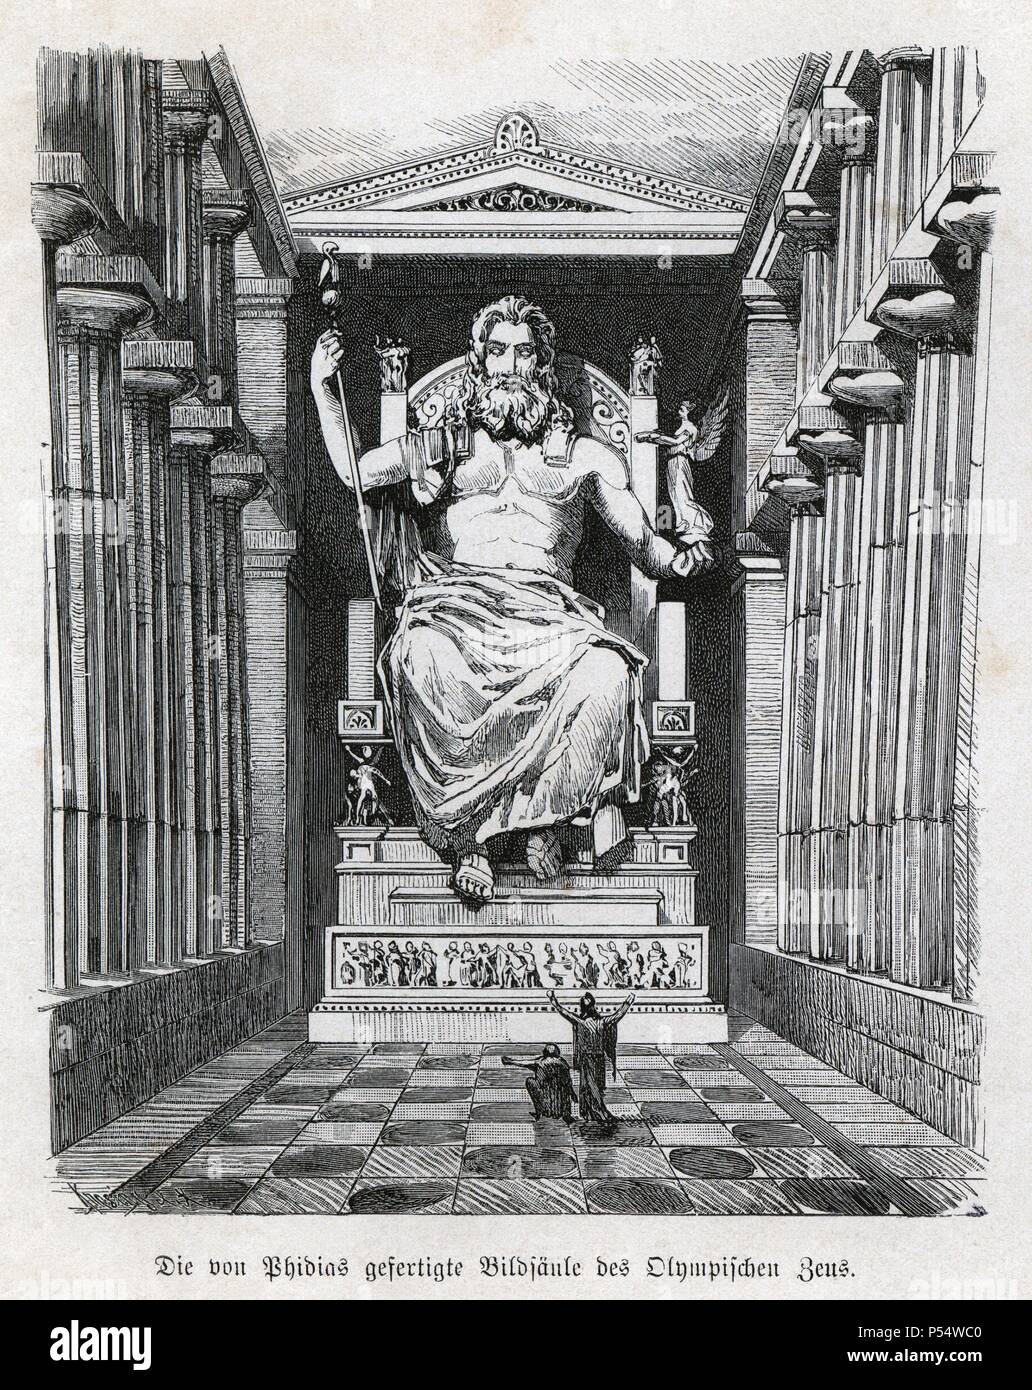 Historia Antigua. Las siete maravillas del mundo antiguo. Estatua y templo de Zeus (Júpiter). Grabado alemán de 1886. Stock Photo